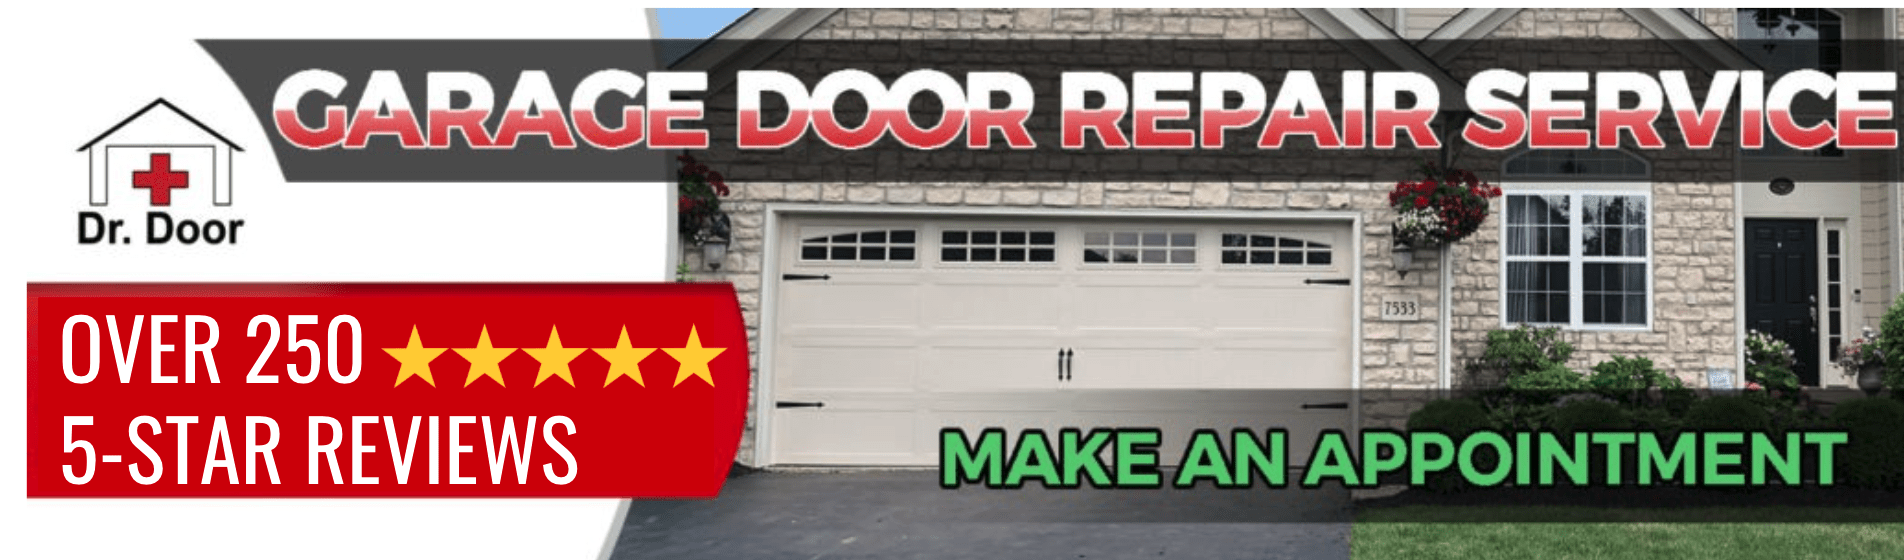 top rated garage door company near me